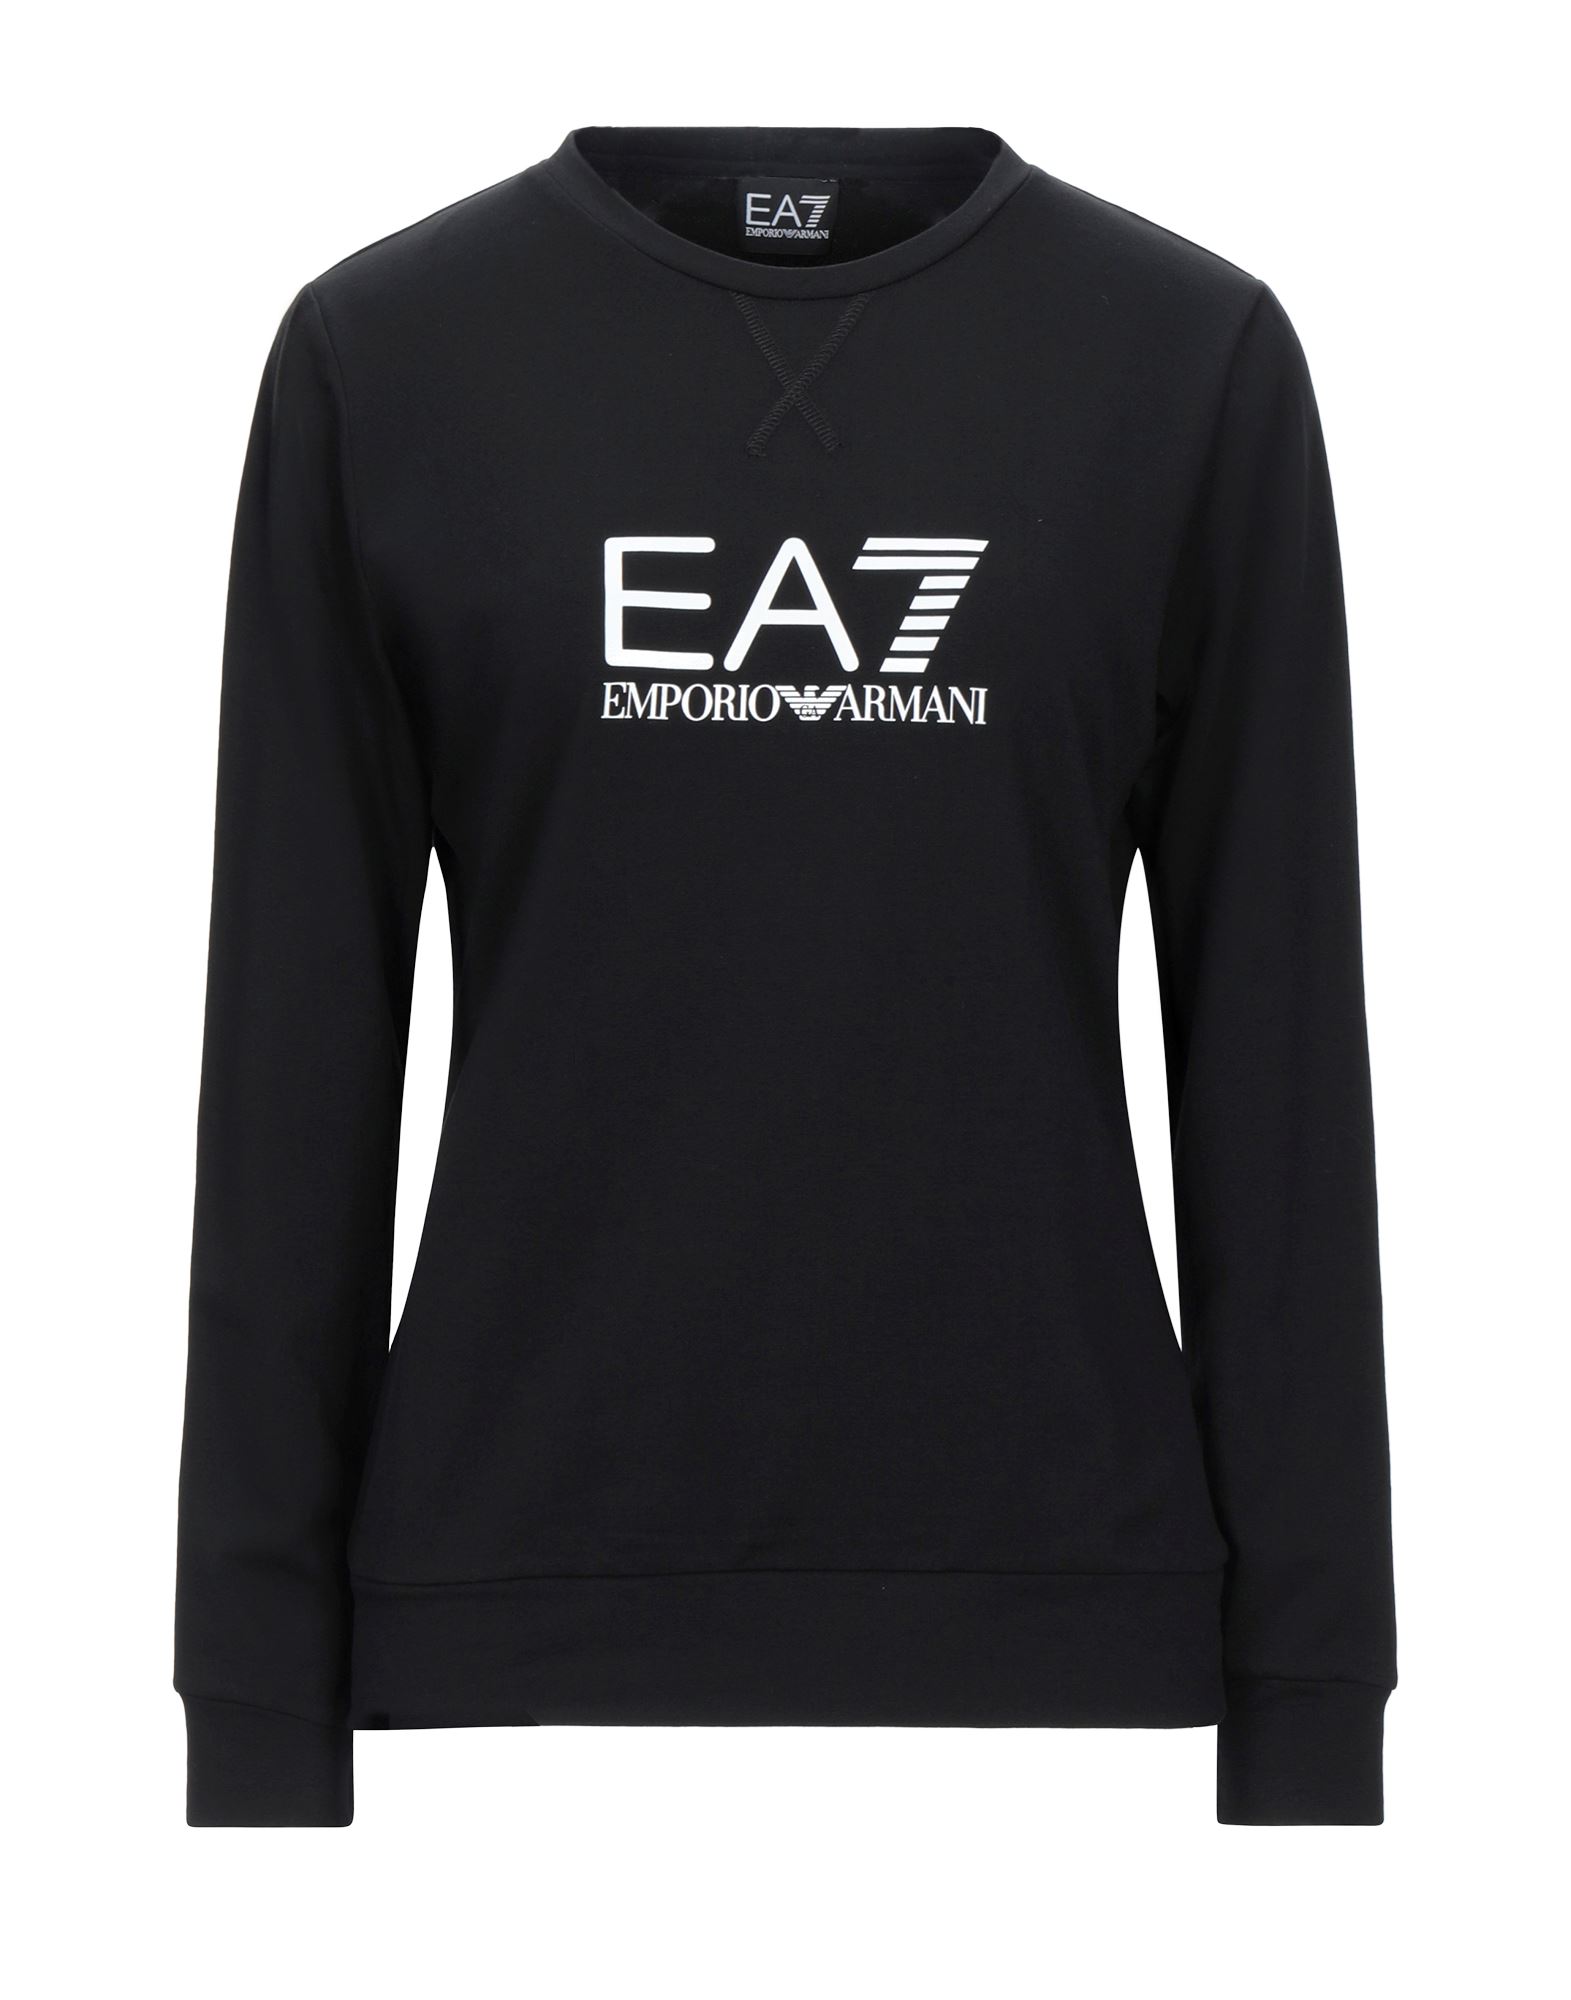 EA7 T-shirts - Item 12537636